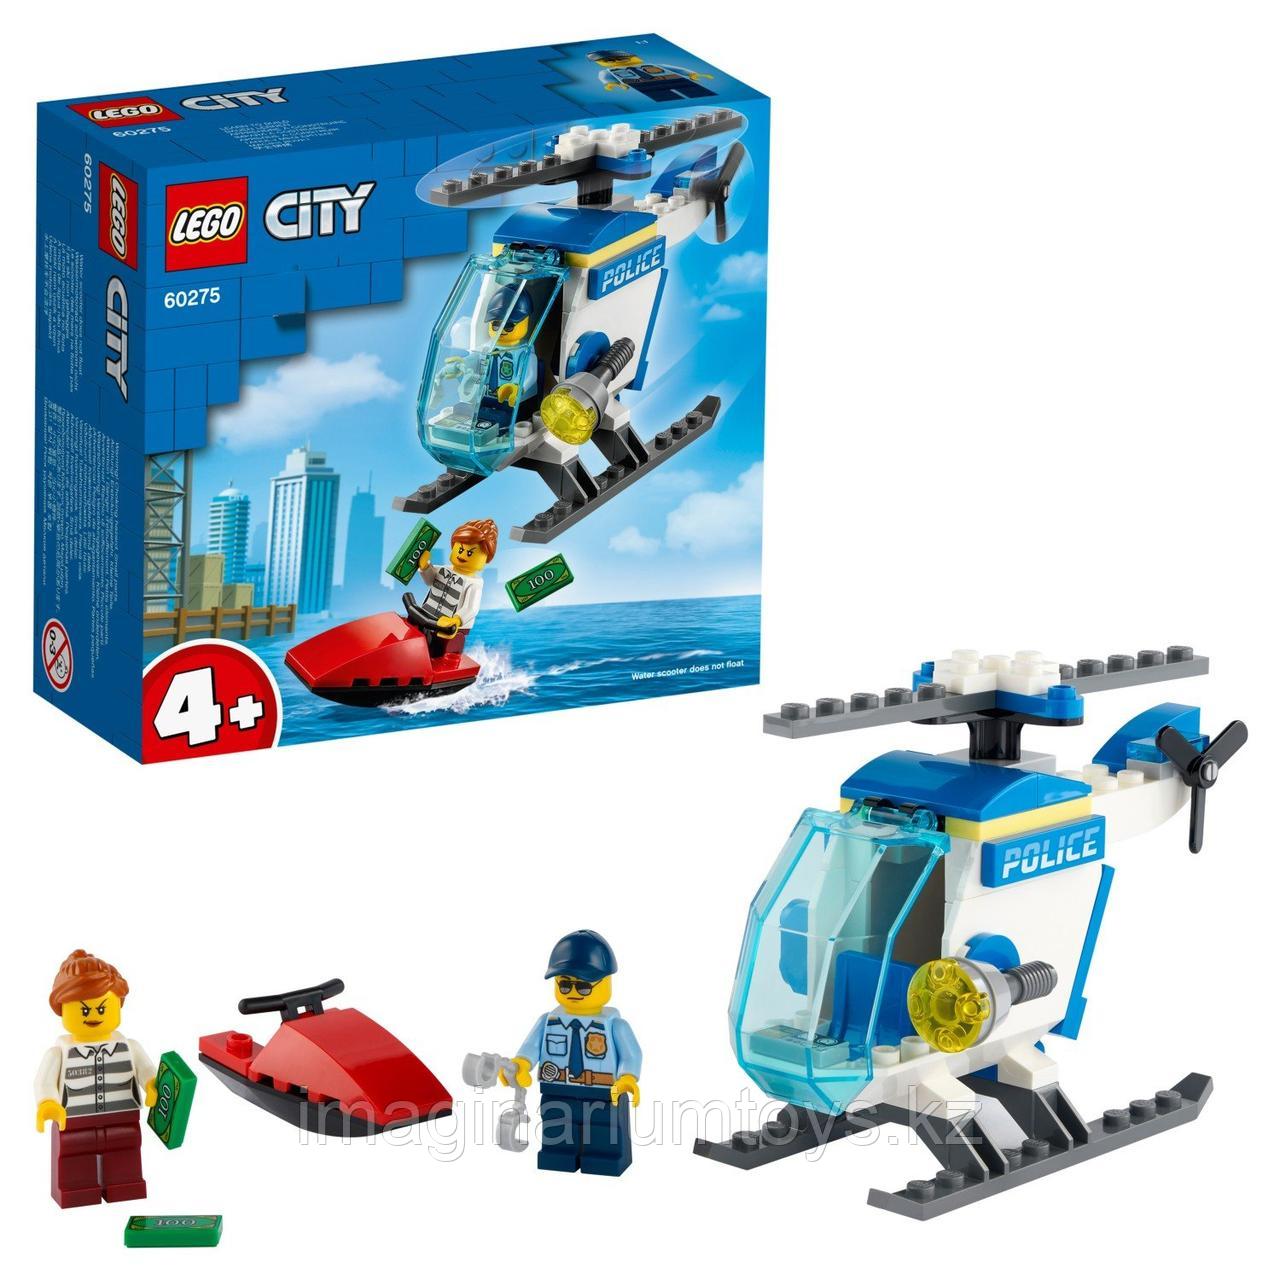 LEGO City Конструктор Лего Город Полицейский вертолет 60275, фото 1